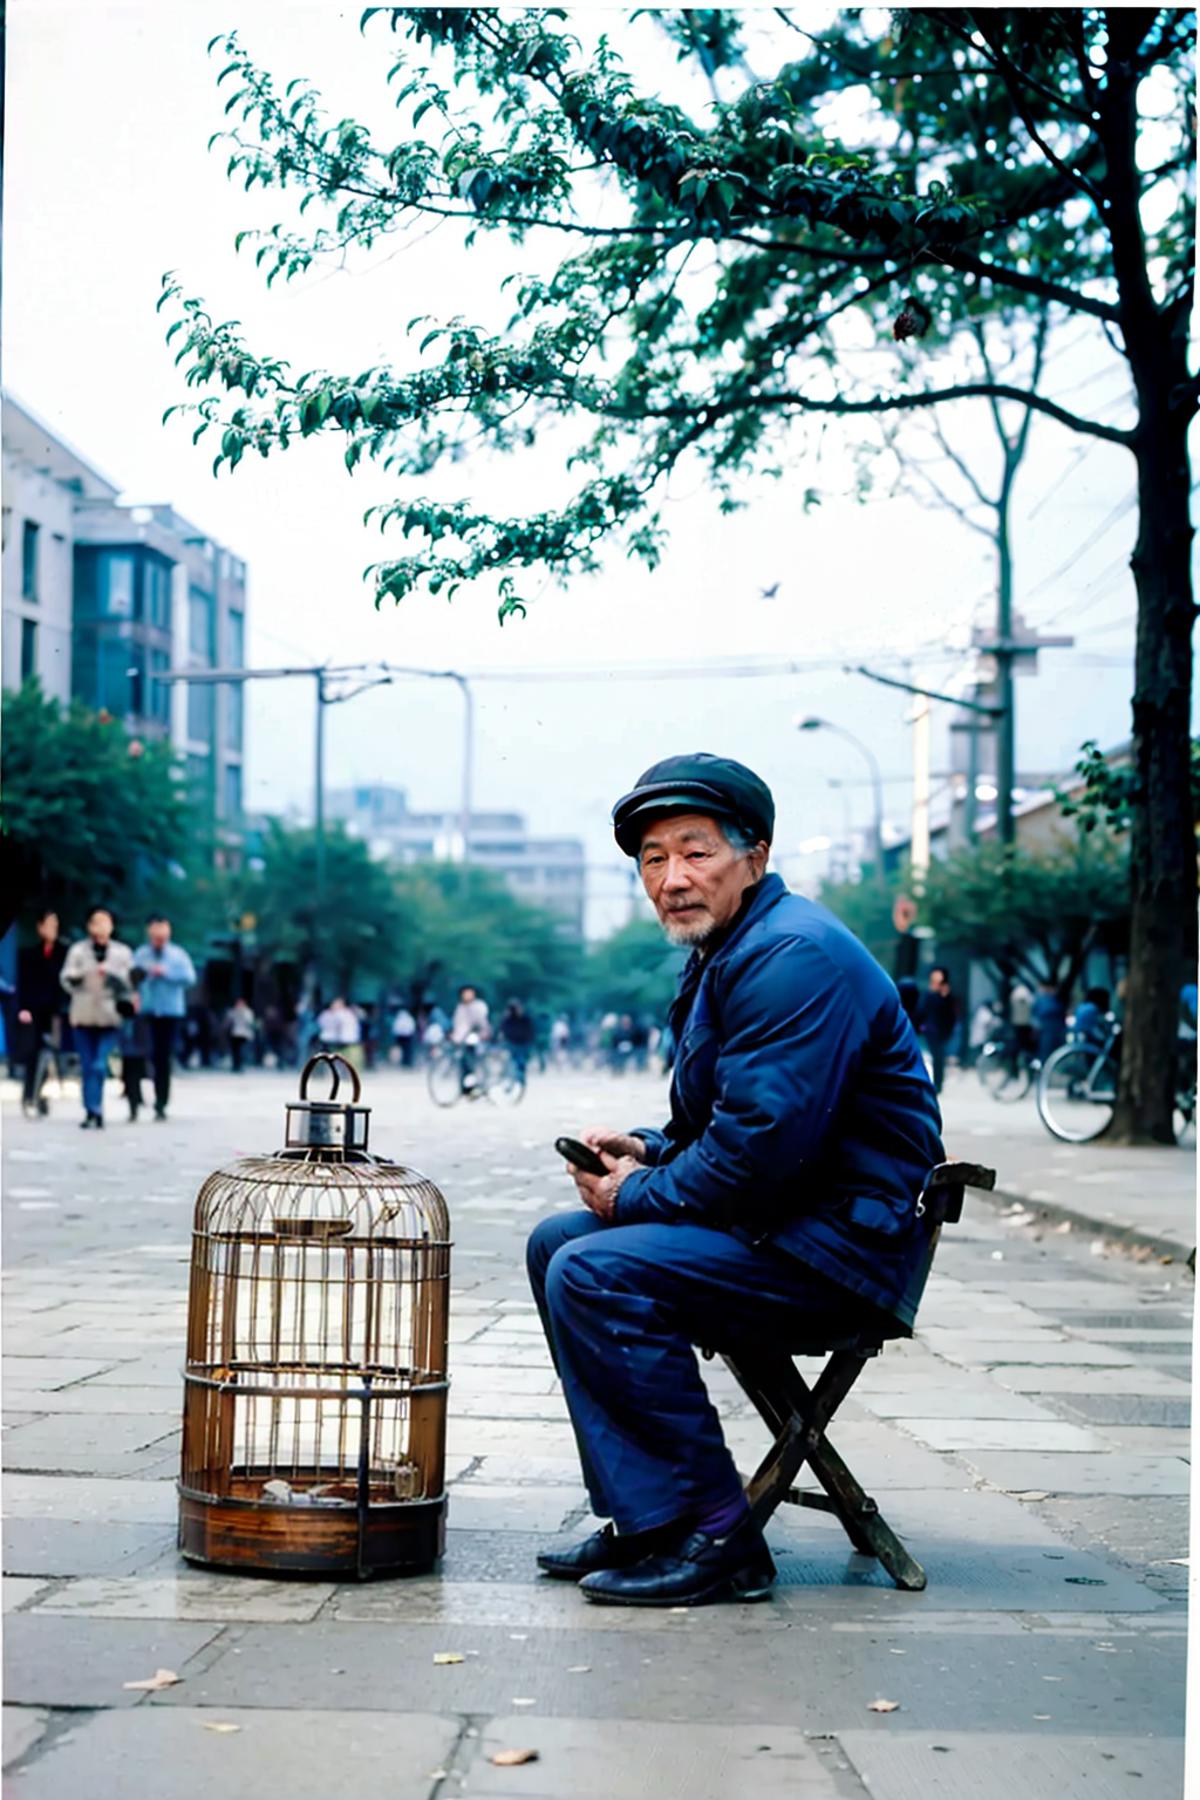 8,90年代中国风  80,90 years chinese style image by kozue